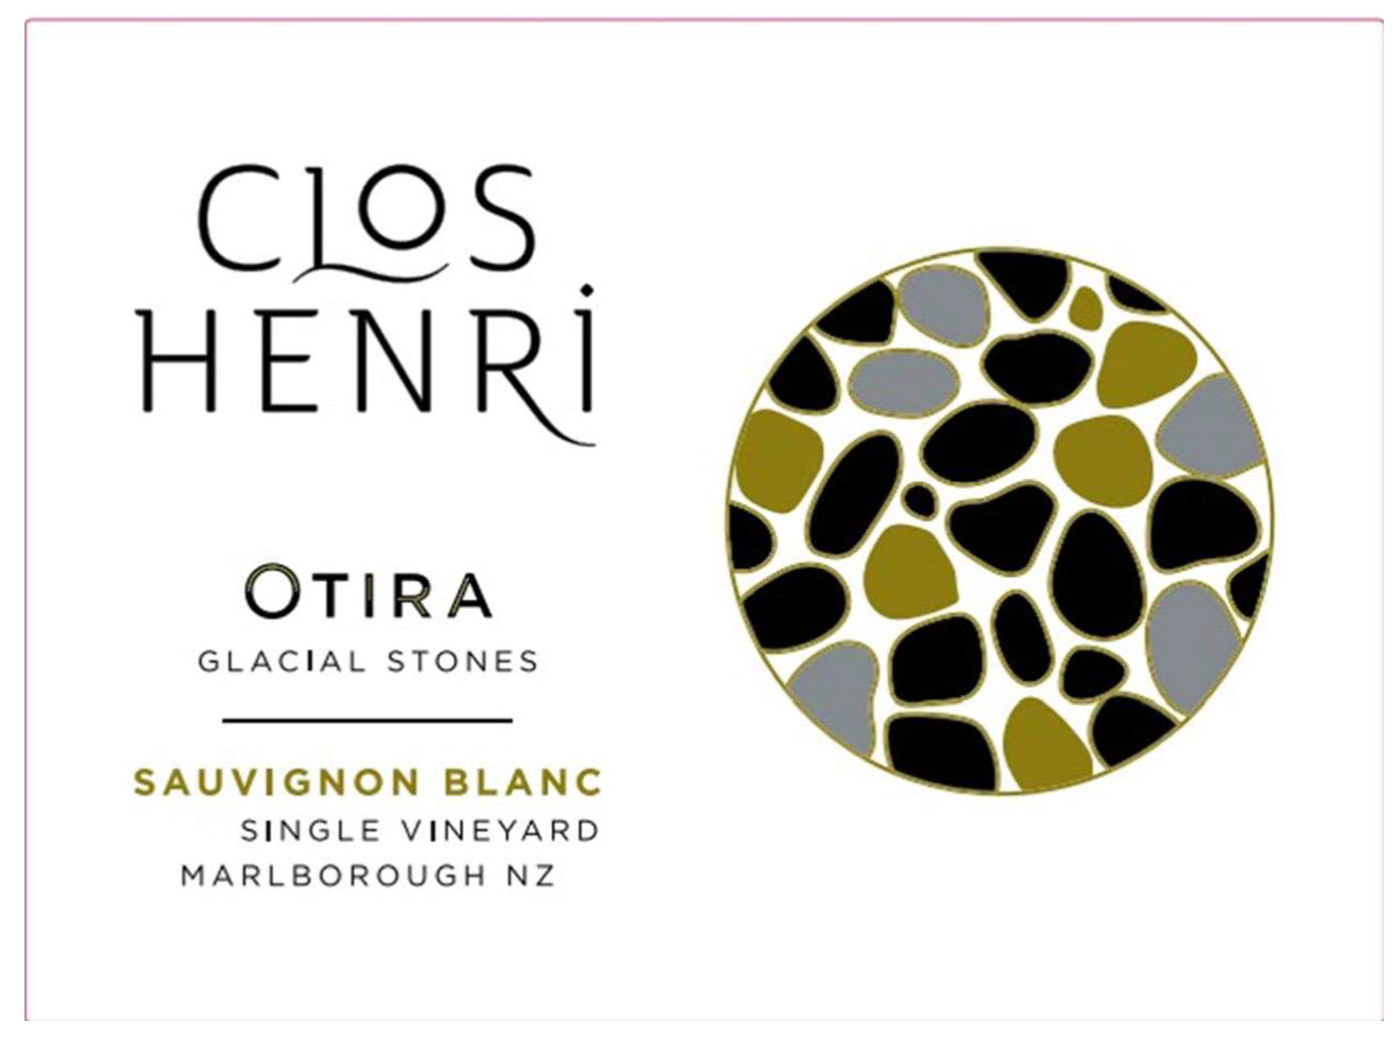 Clos Henri - Otira Sauvignon Blanc label